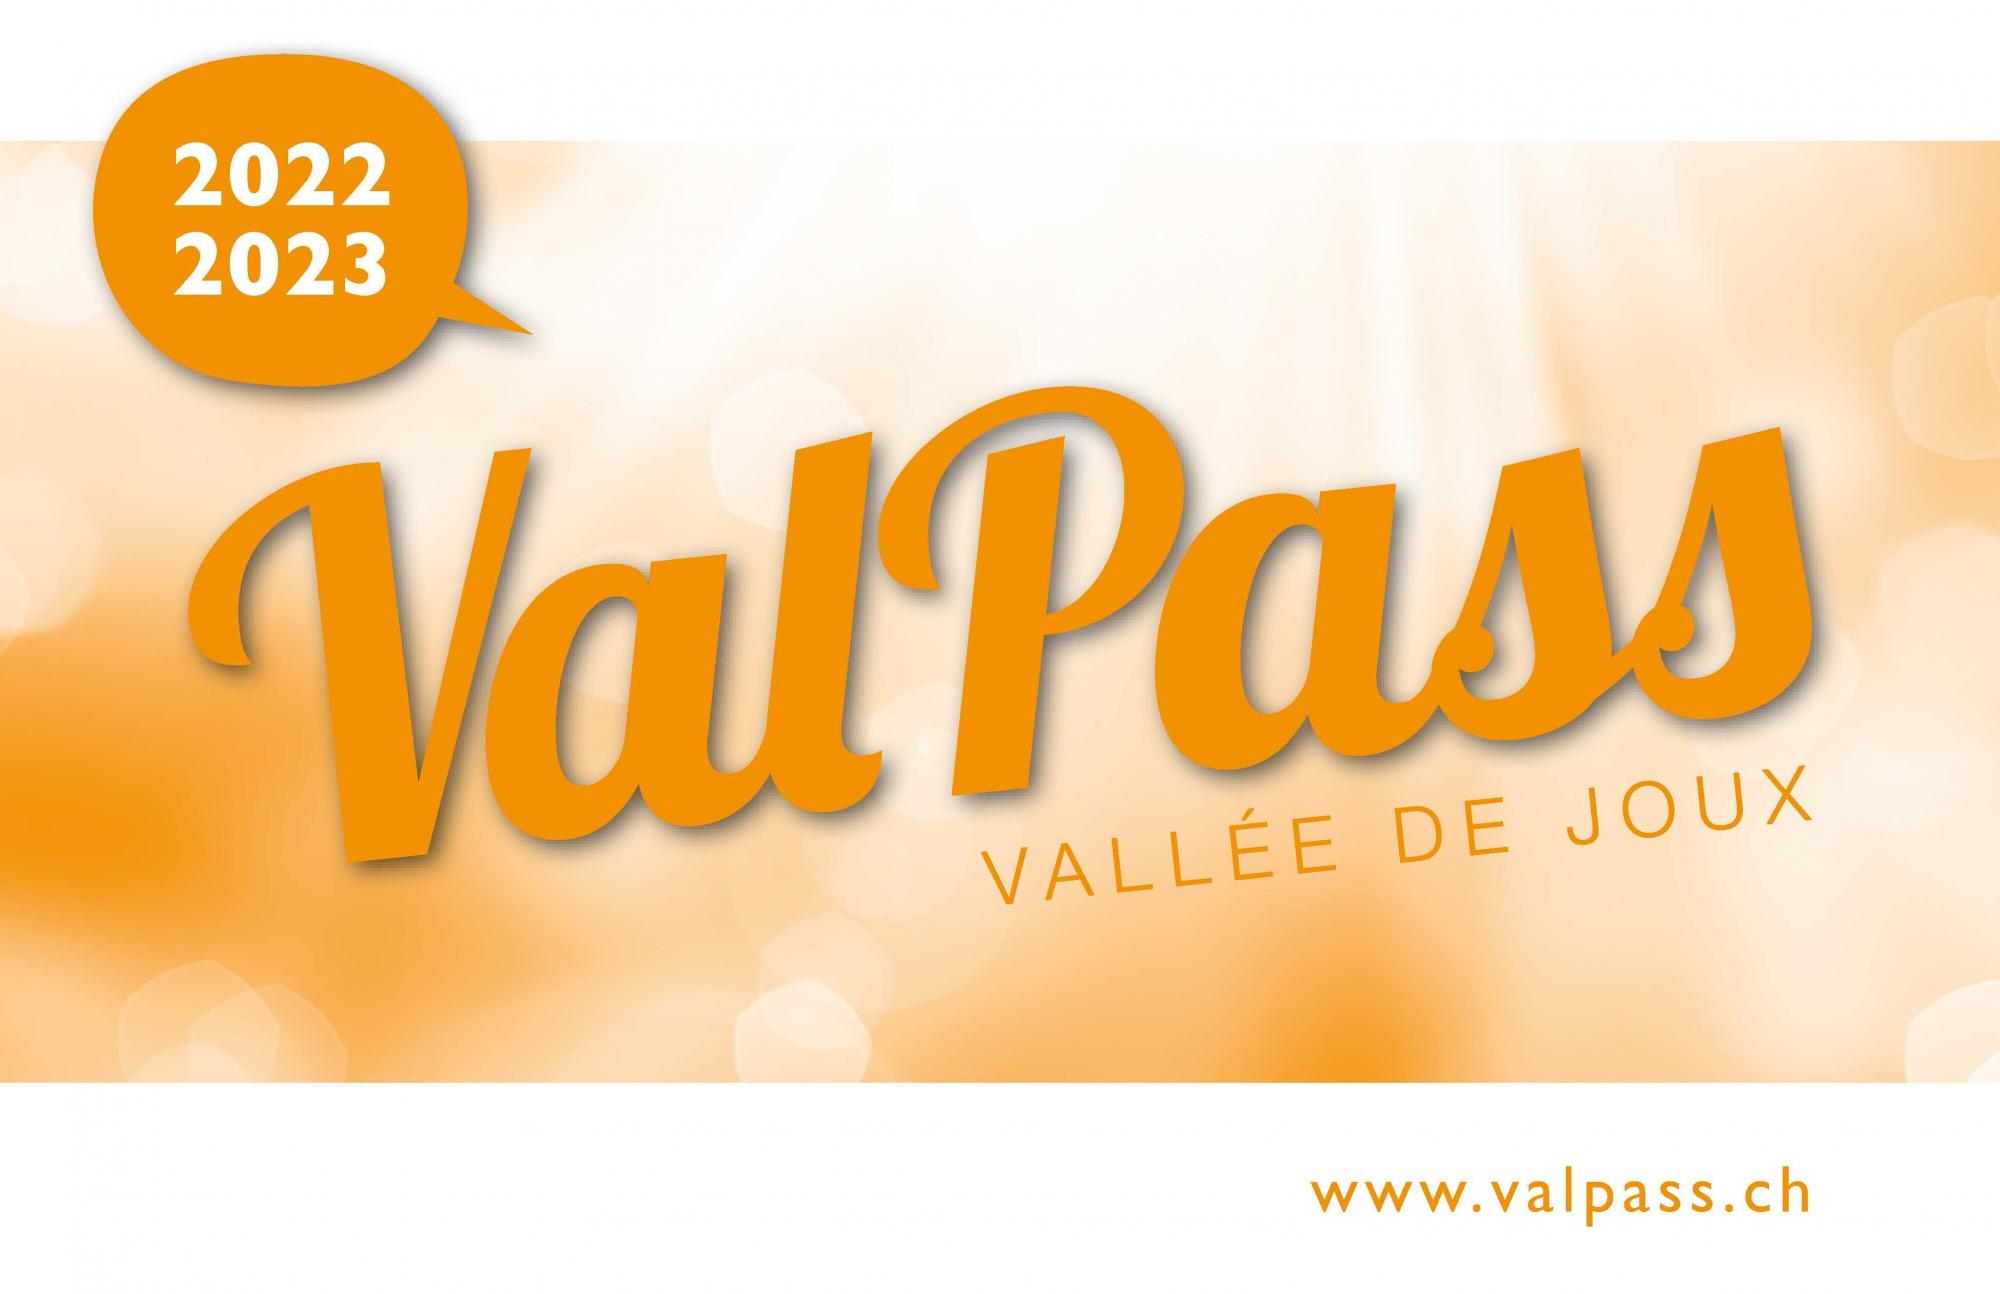 Carte ValPass 2022-2023